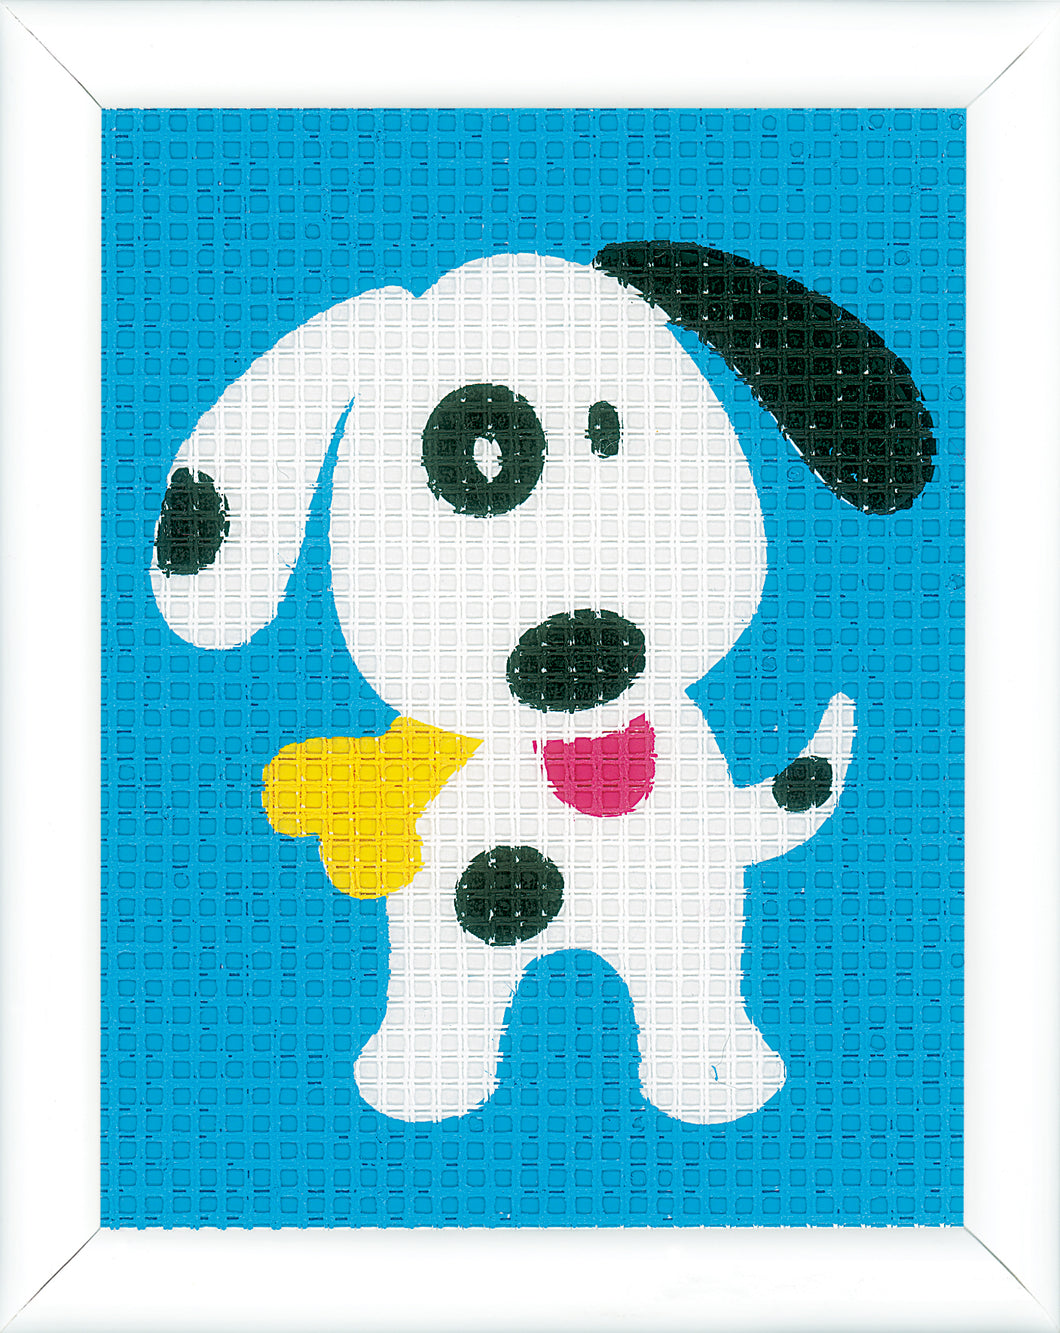 Tapestry Kit ~ Dog